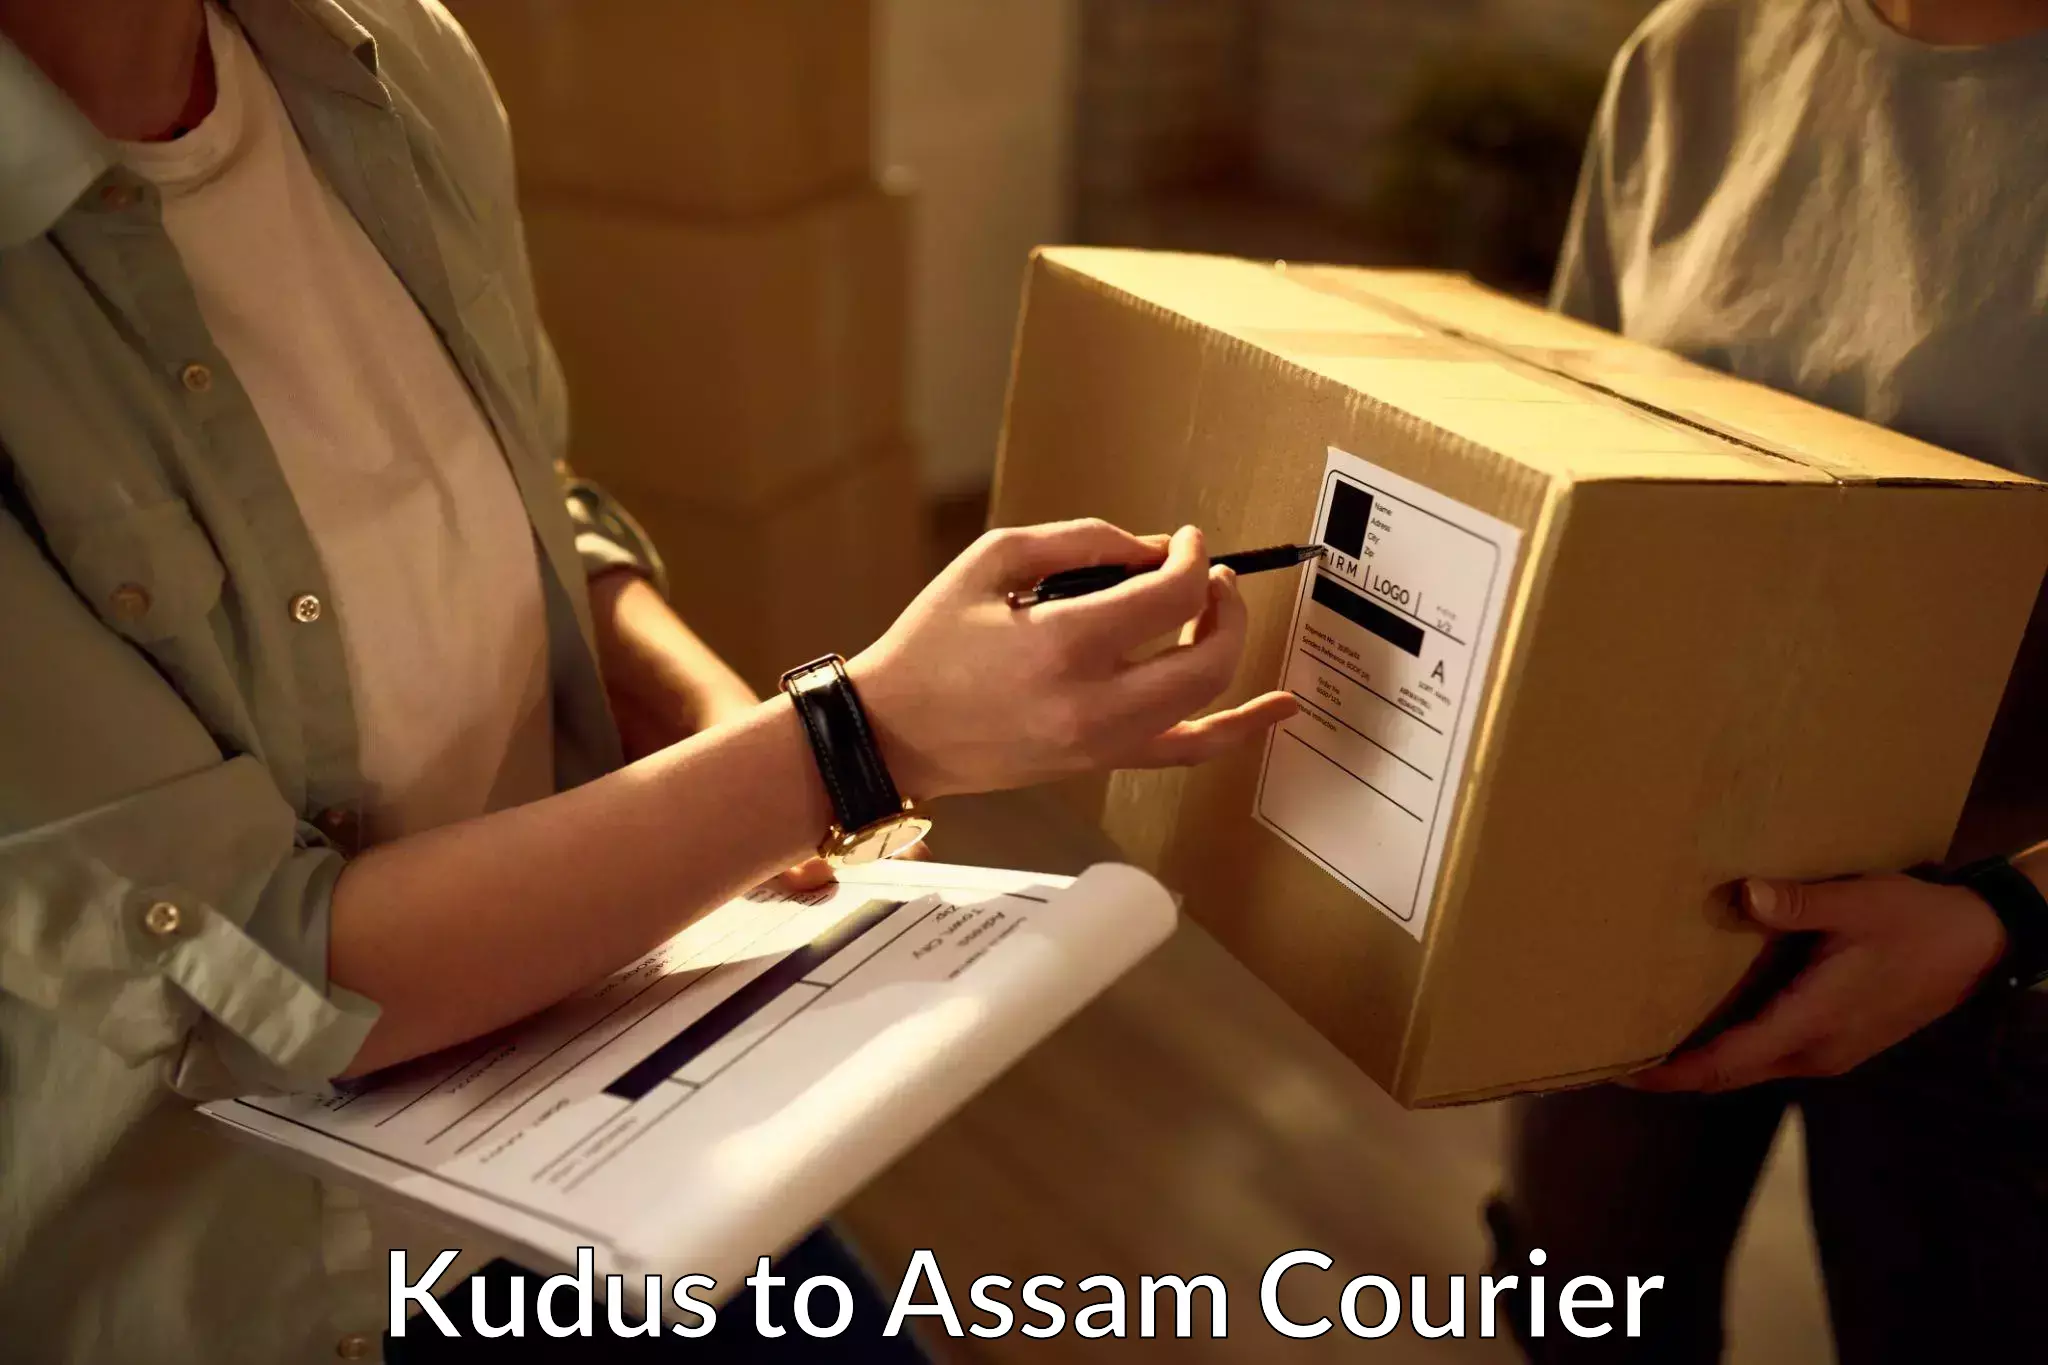 Customizable shipping options Kudus to Lala Assam